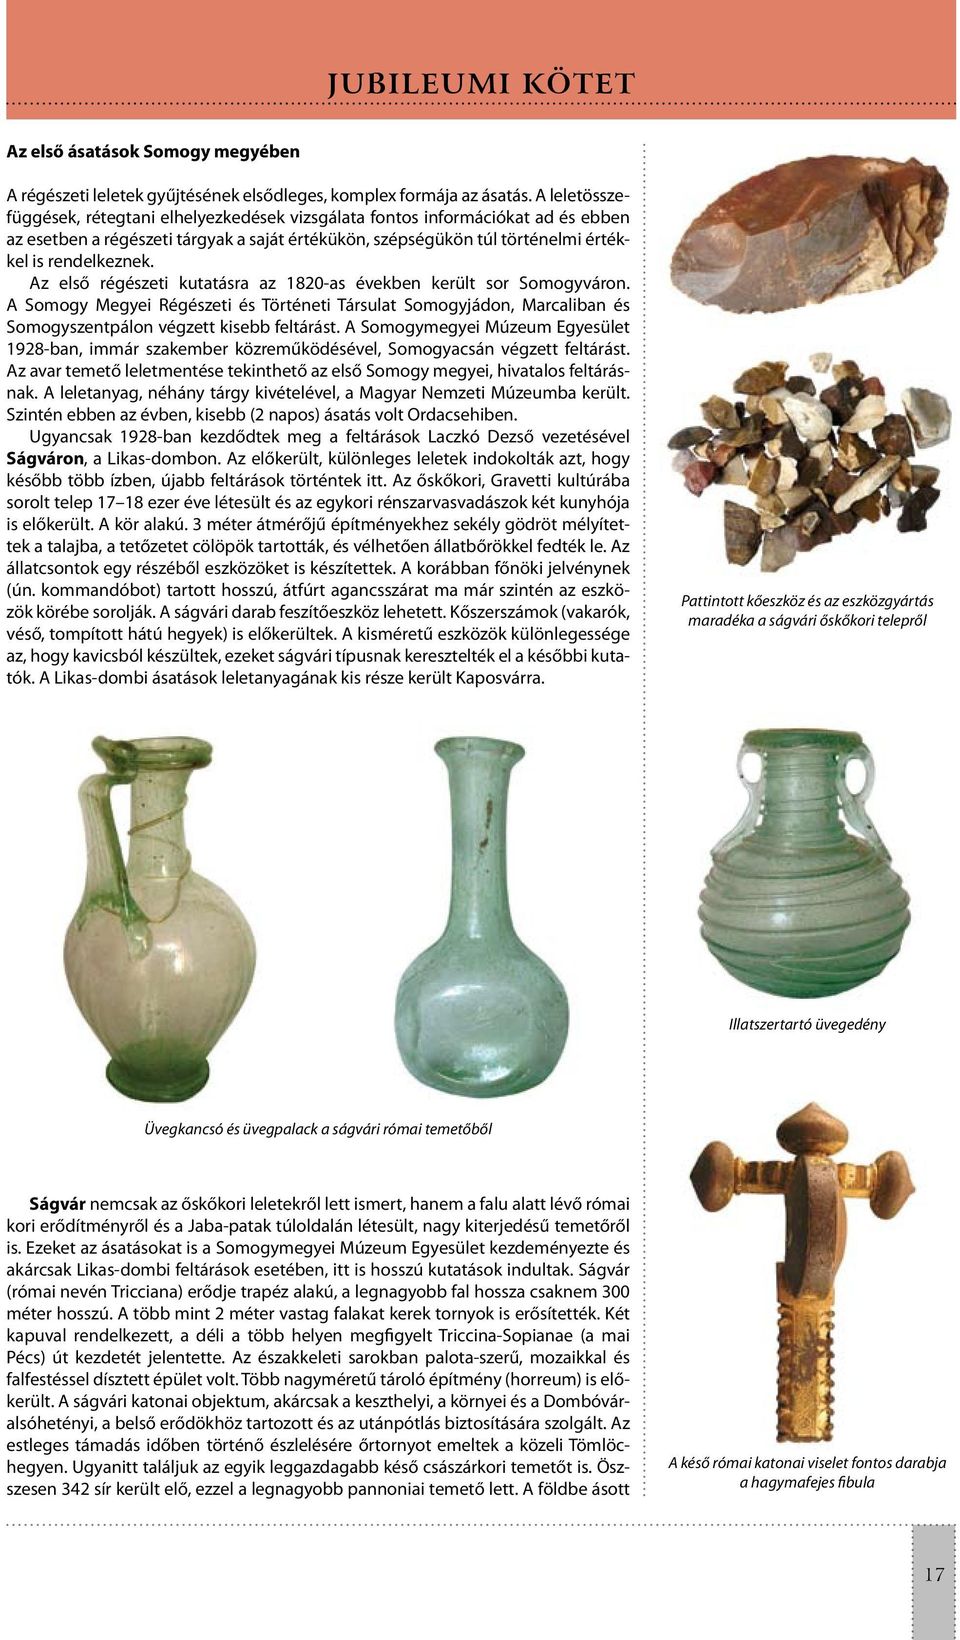 Az első régészeti kutatásra az 1820-as években került sor Somogyváron. A Somogy Megyei Régészeti és Történeti Társulat Somogyjádon, Marcaliban és Somogyszentpálon végzett kisebb feltárást.